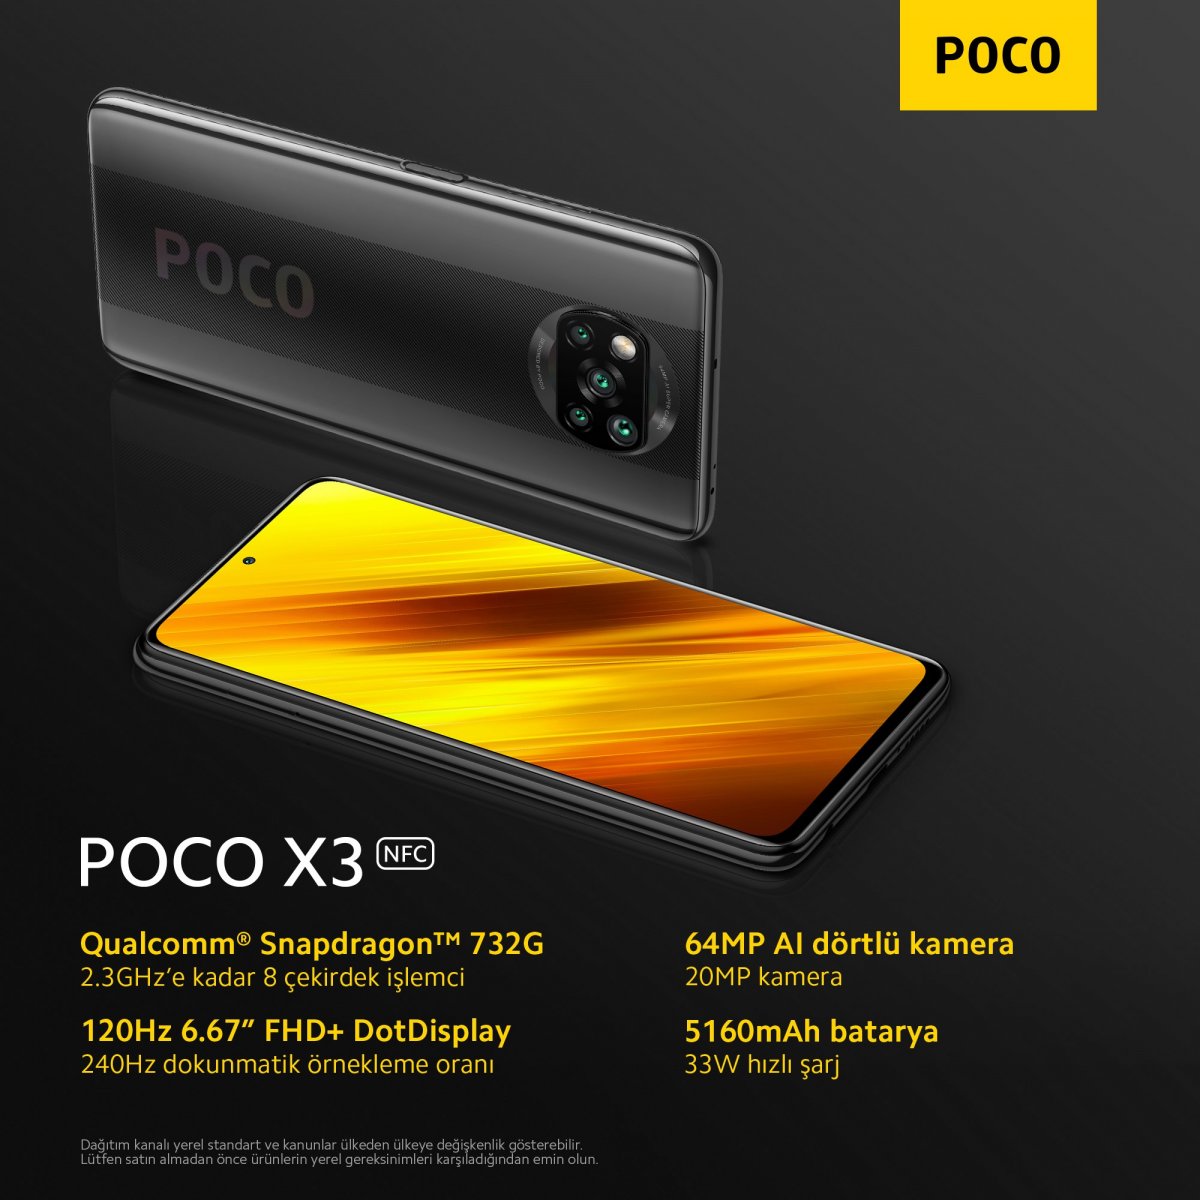 Xiaomi Poco X3 Nfc Tanıtıldı Poco X3 Nfc özellikleri Neler Poco X3 Nfc Fiyatı Ne Kadar 5864